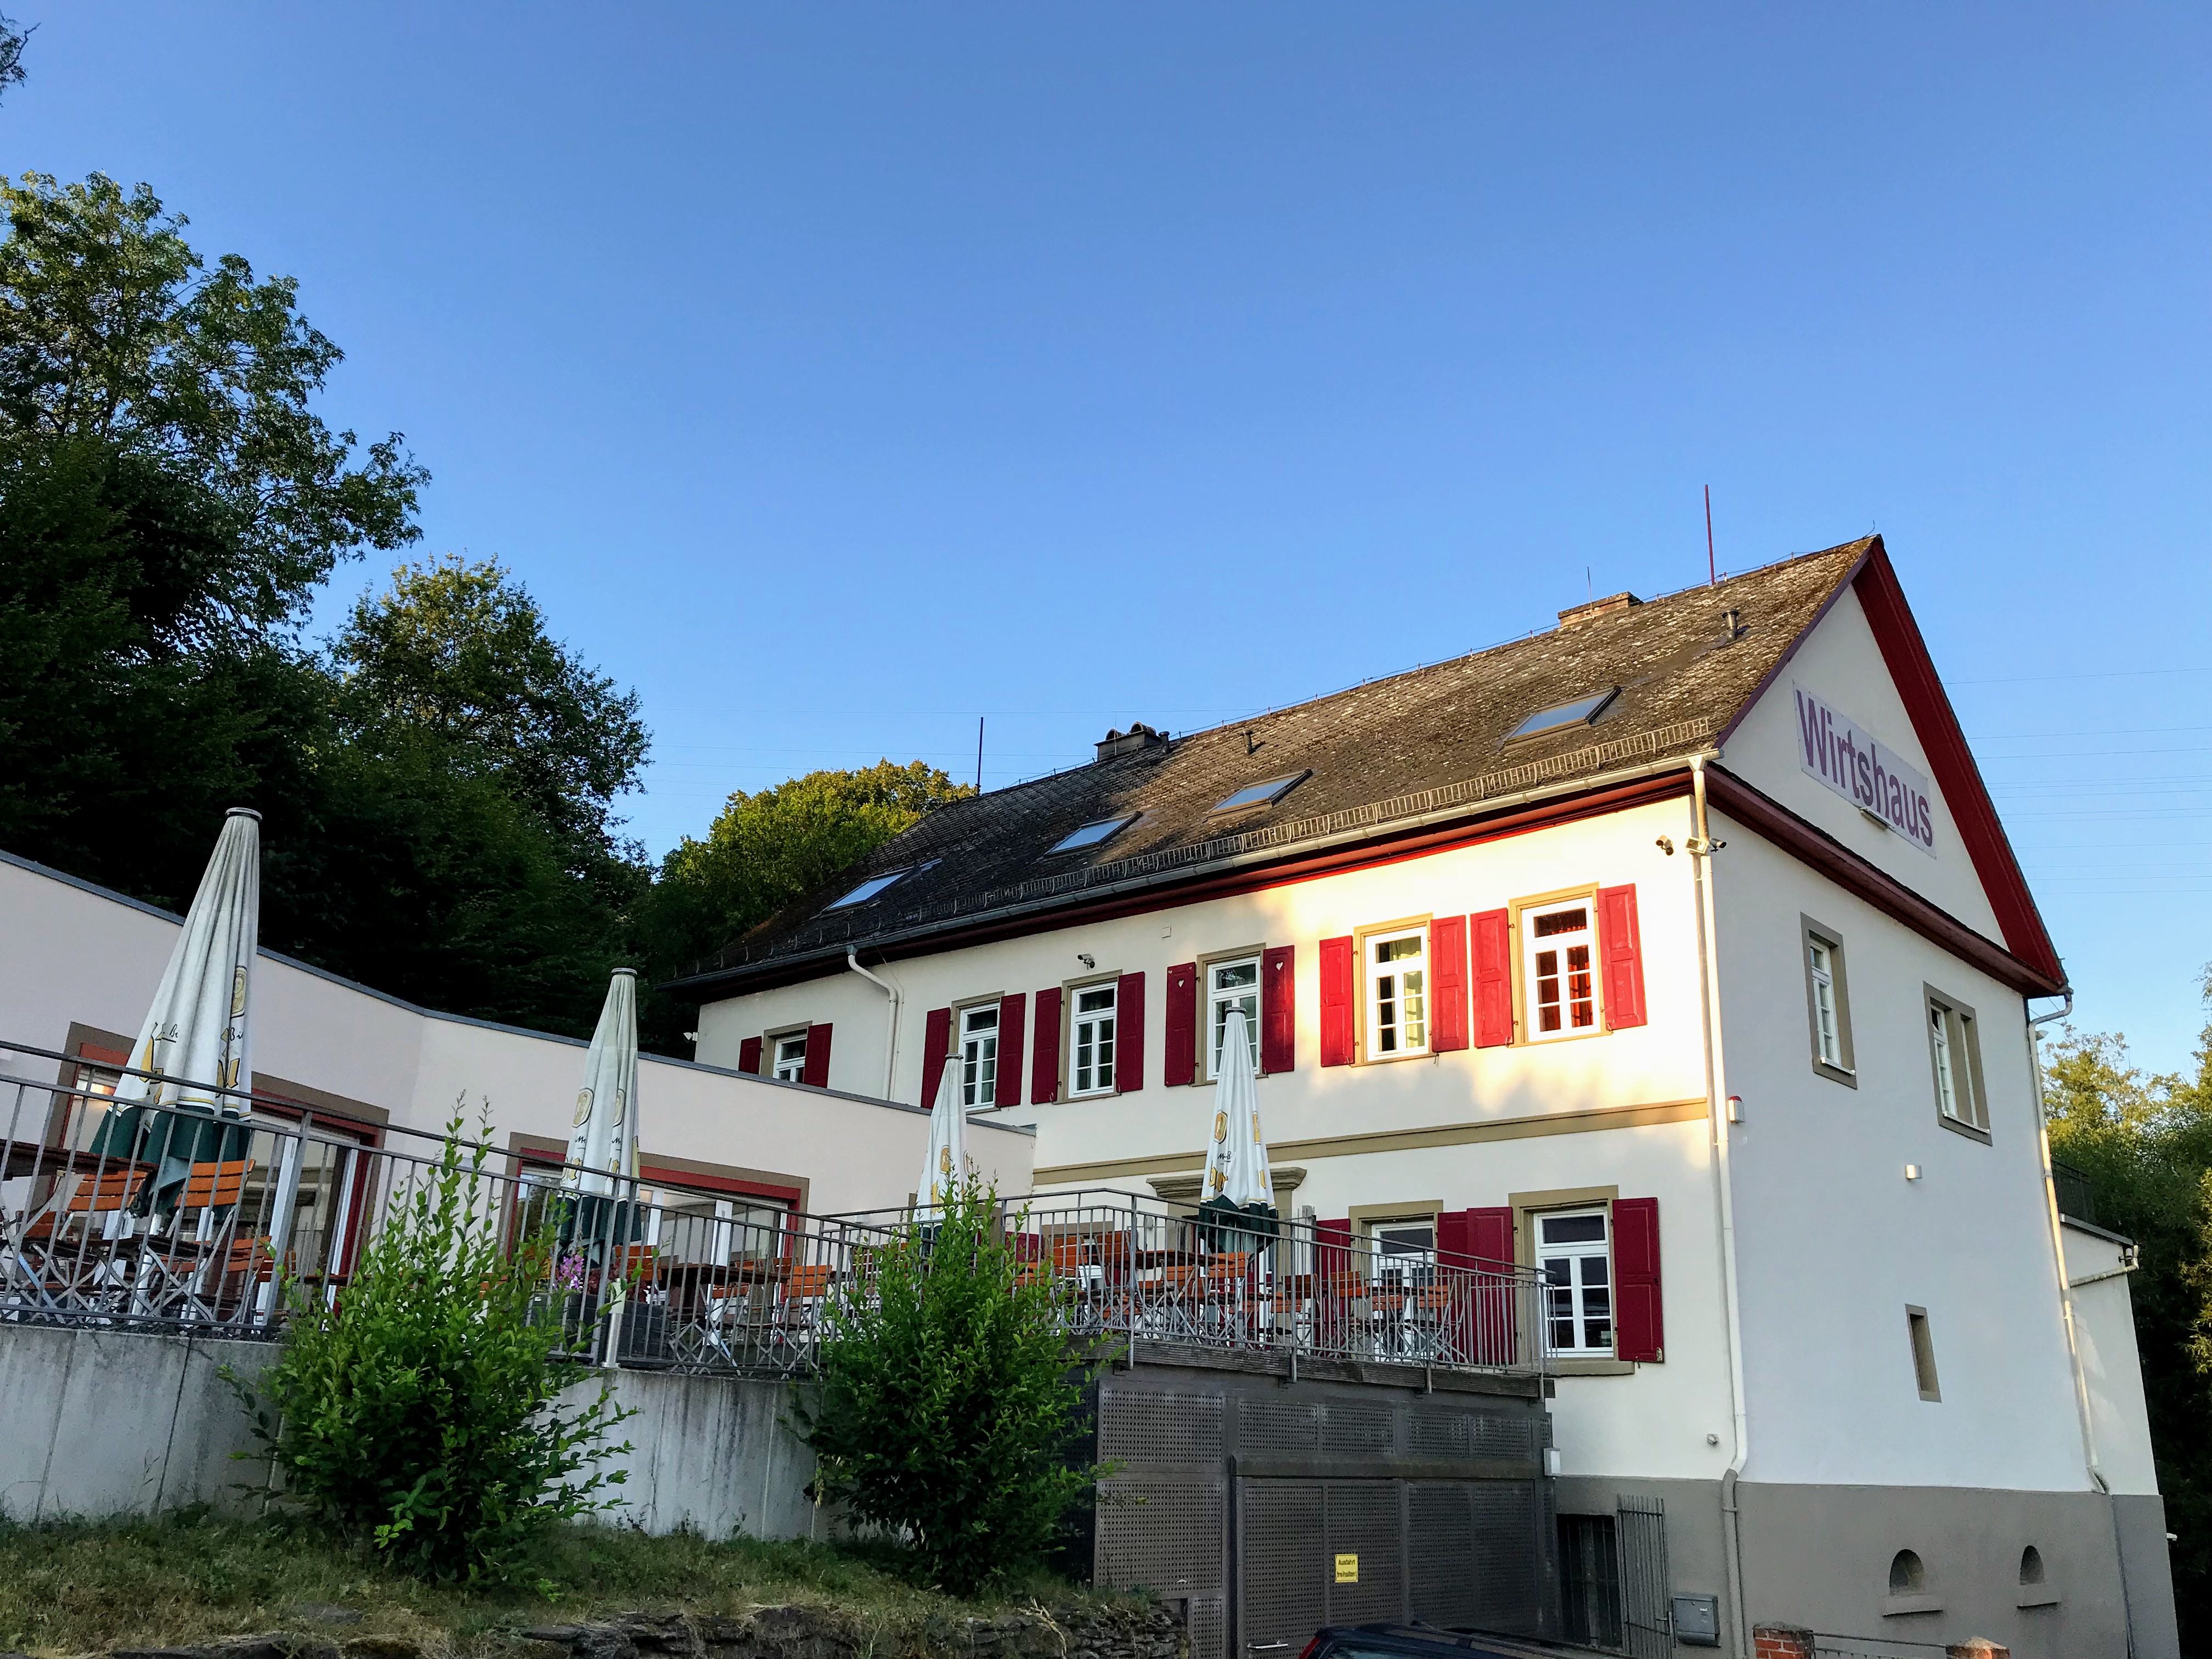 Wirtshaus Domäne am See Hotel in Simmern/Hunsrück